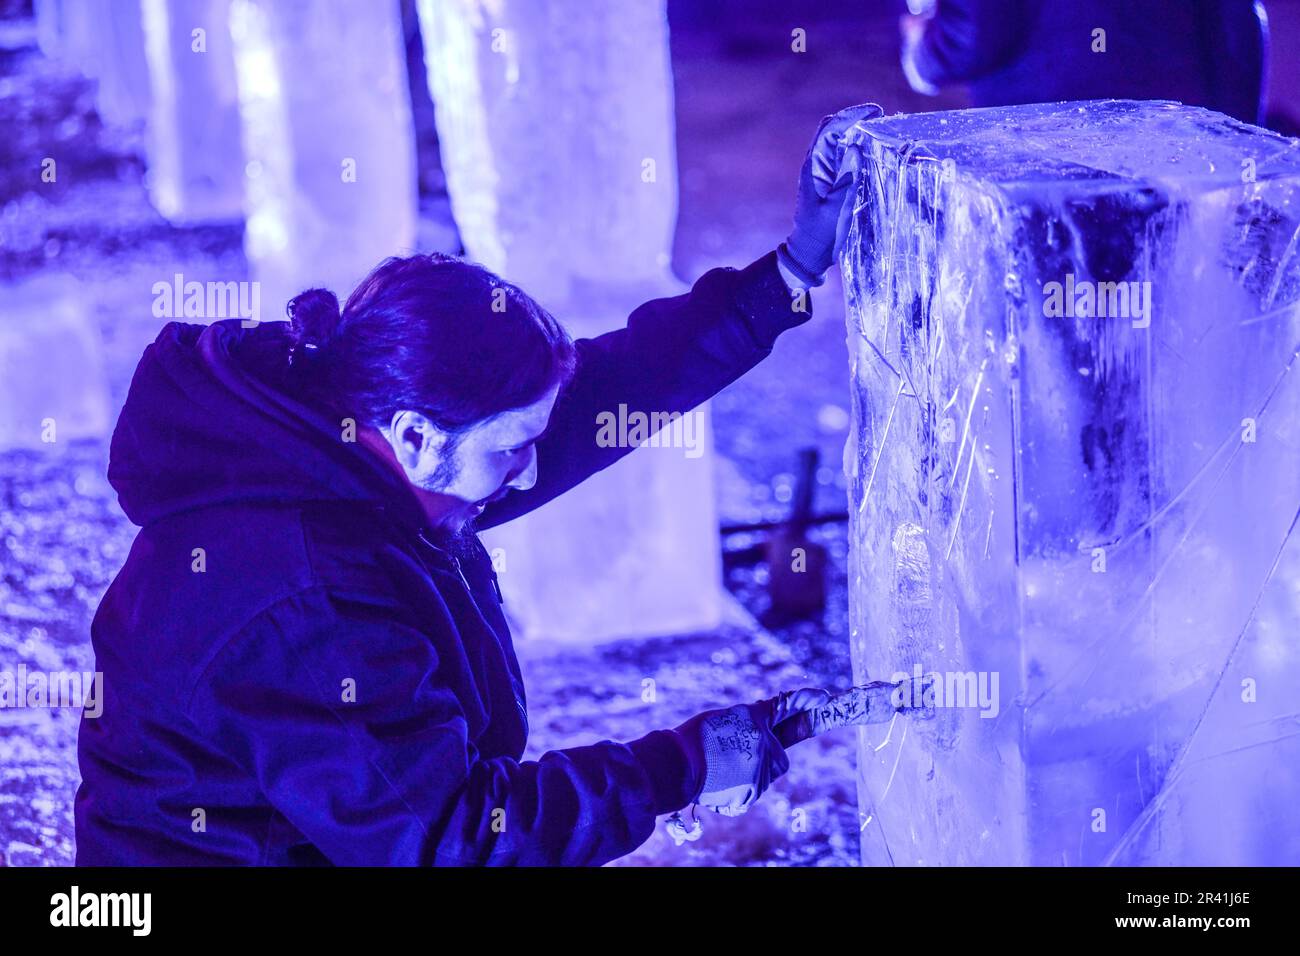 Concours de sculpture sur glace à Varazdin pendant les vacances d'hiver, en Croatie Banque D'Images